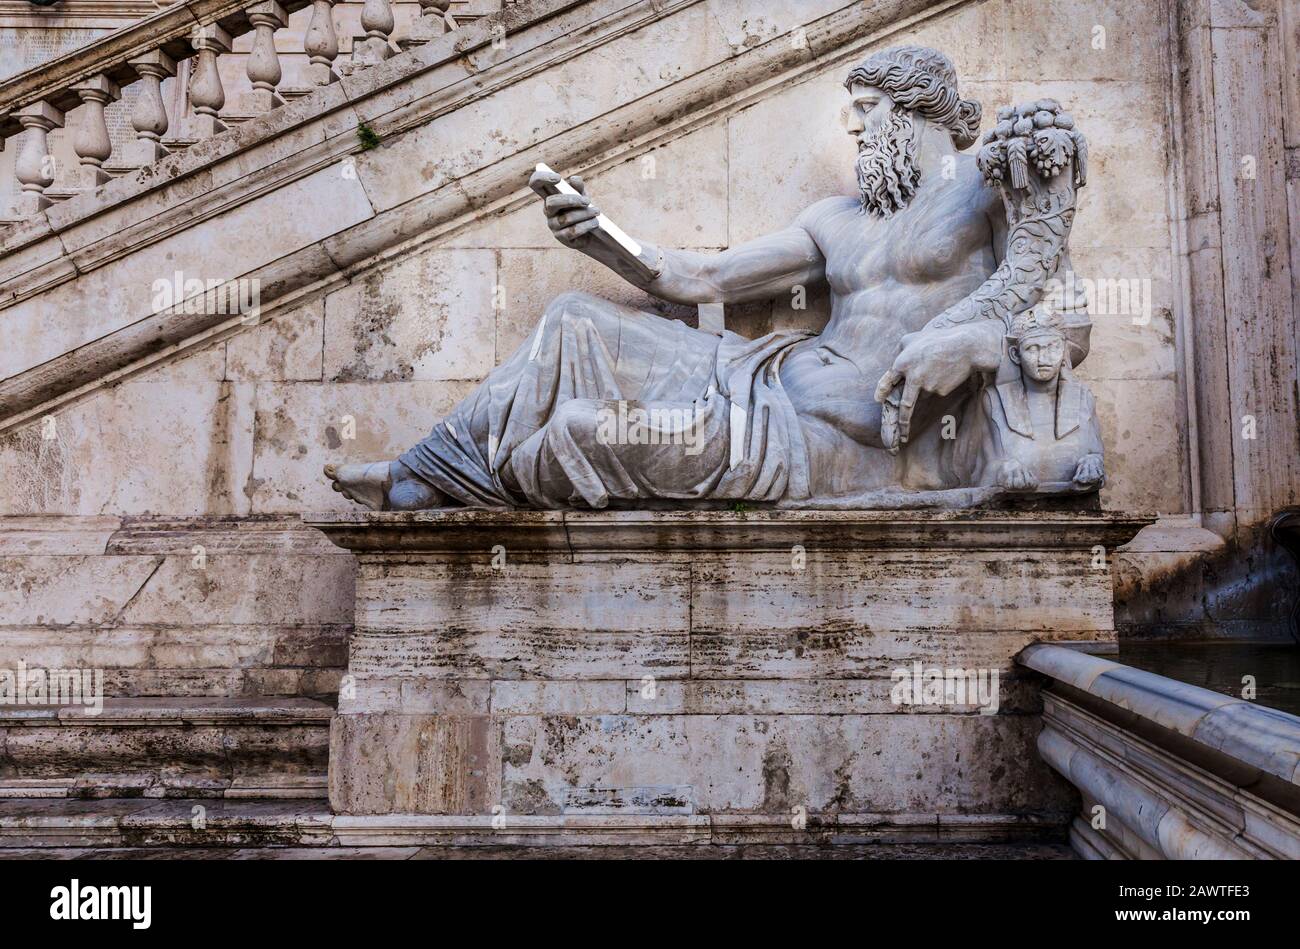 Statue devant le Musée Capitolin et le Palazzo Senatorio , Rome Italie. Retouchée pour le faire paraître, la statue regarde un appareil numérique. Banque D'Images